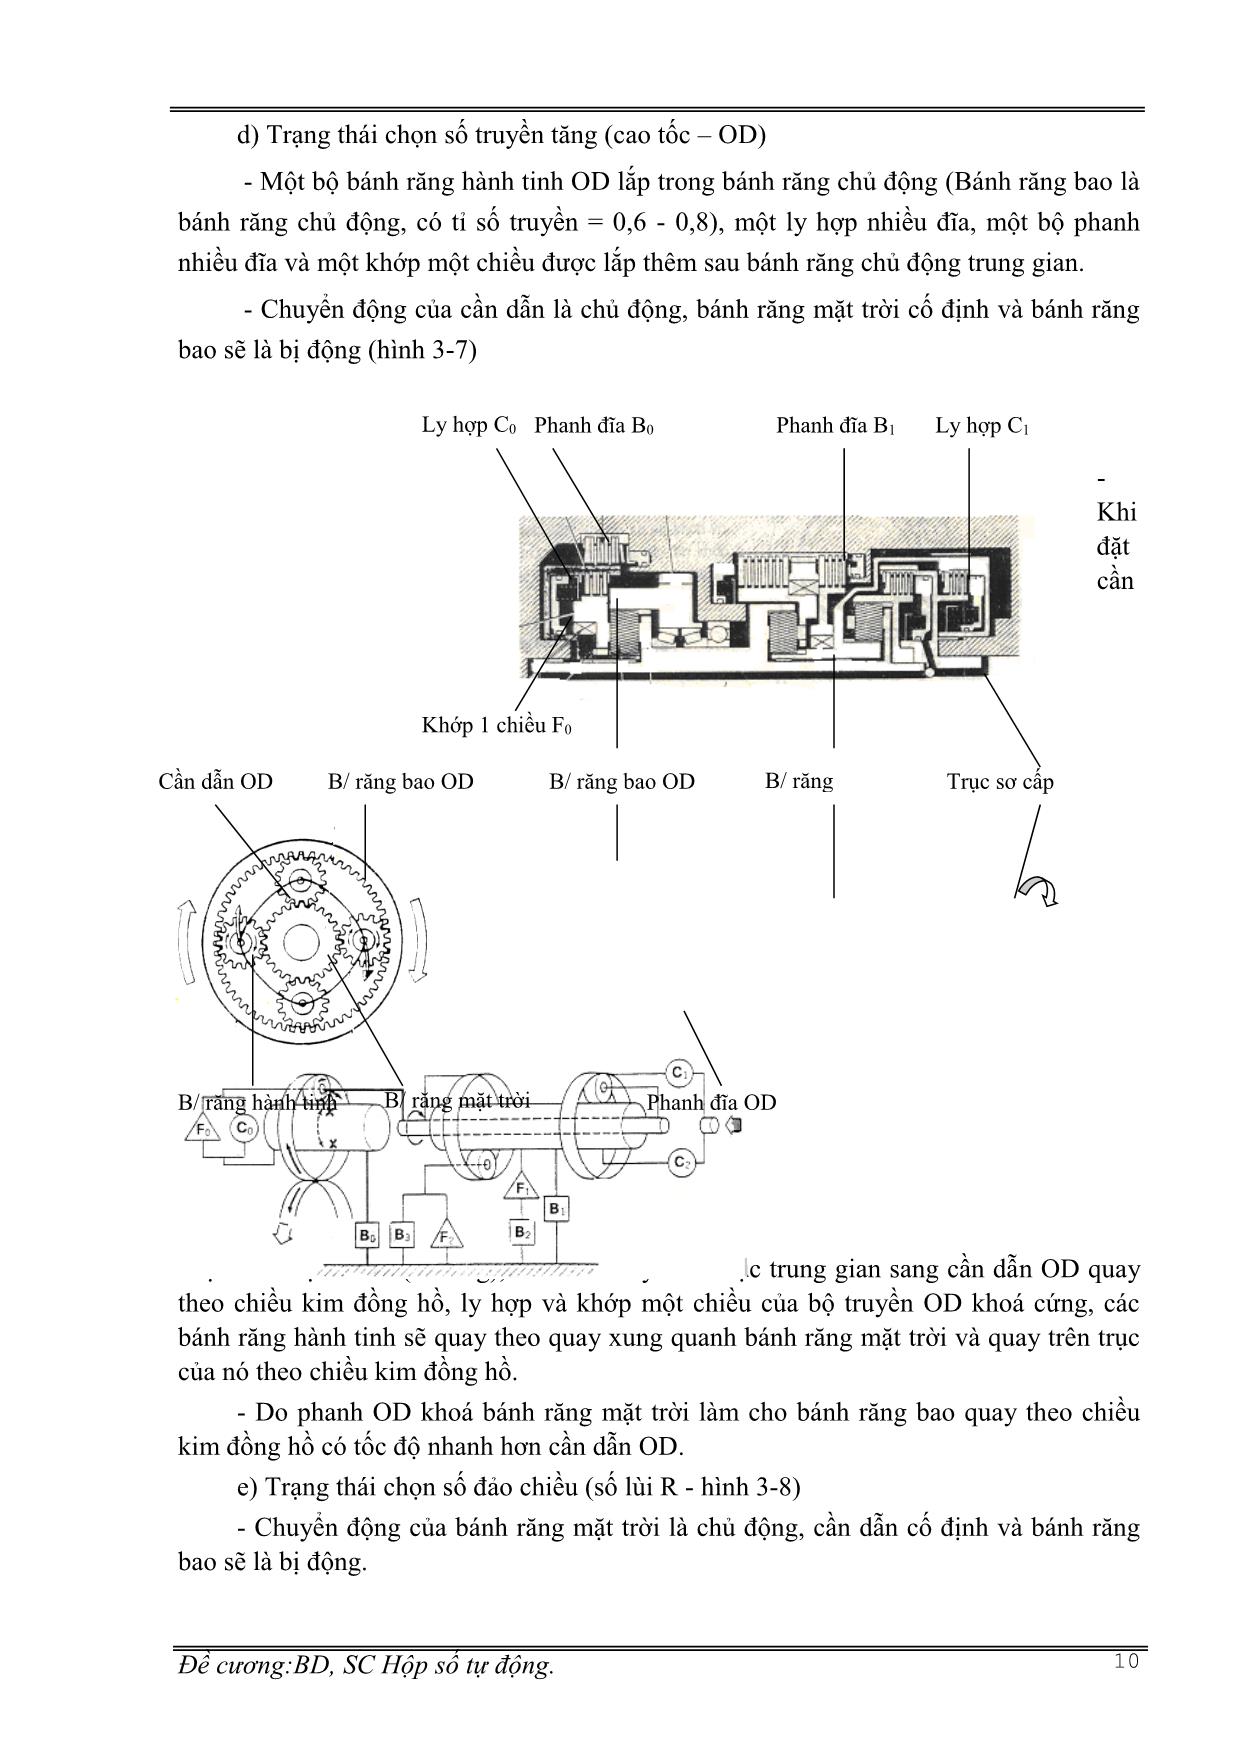 Giáo trình mô đun Bảo dưỡng và sửa chữa hộp số tự động - Nghề: Công nghệ ô tô trang 10